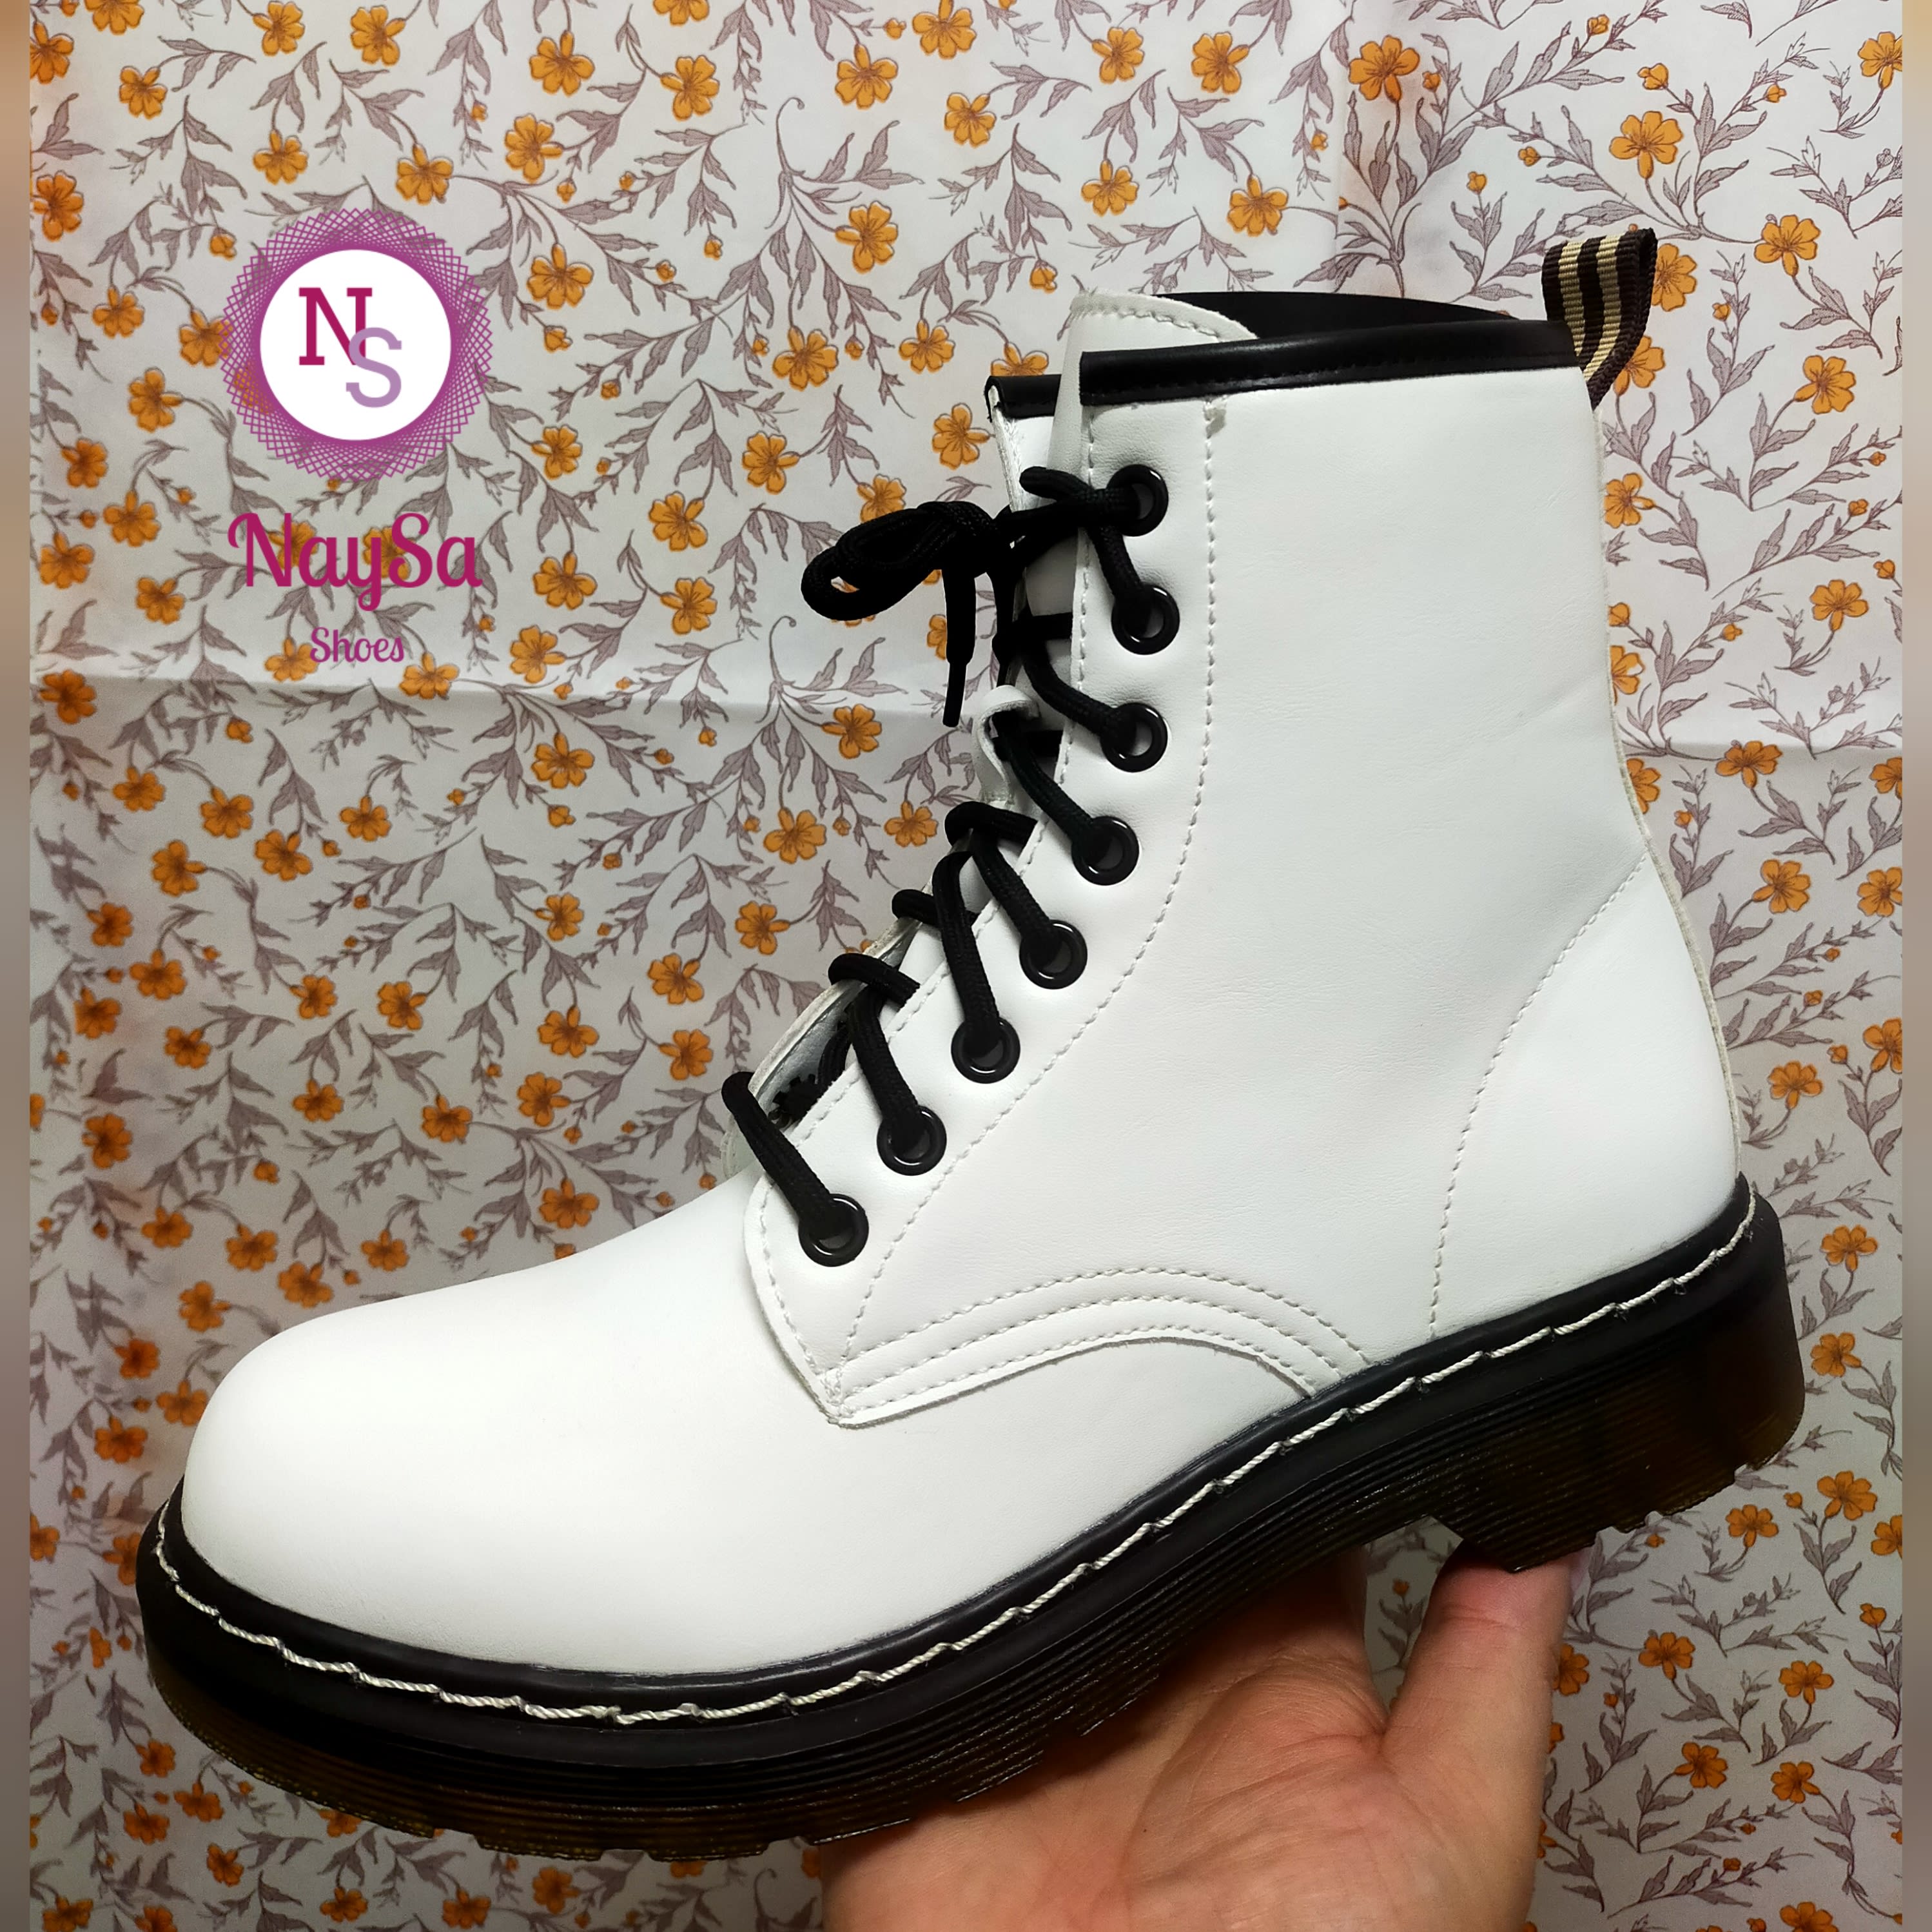 BOTINES H2203 - - 38 - - Naysa Shoes - Zapatos y Complementos | Benavente